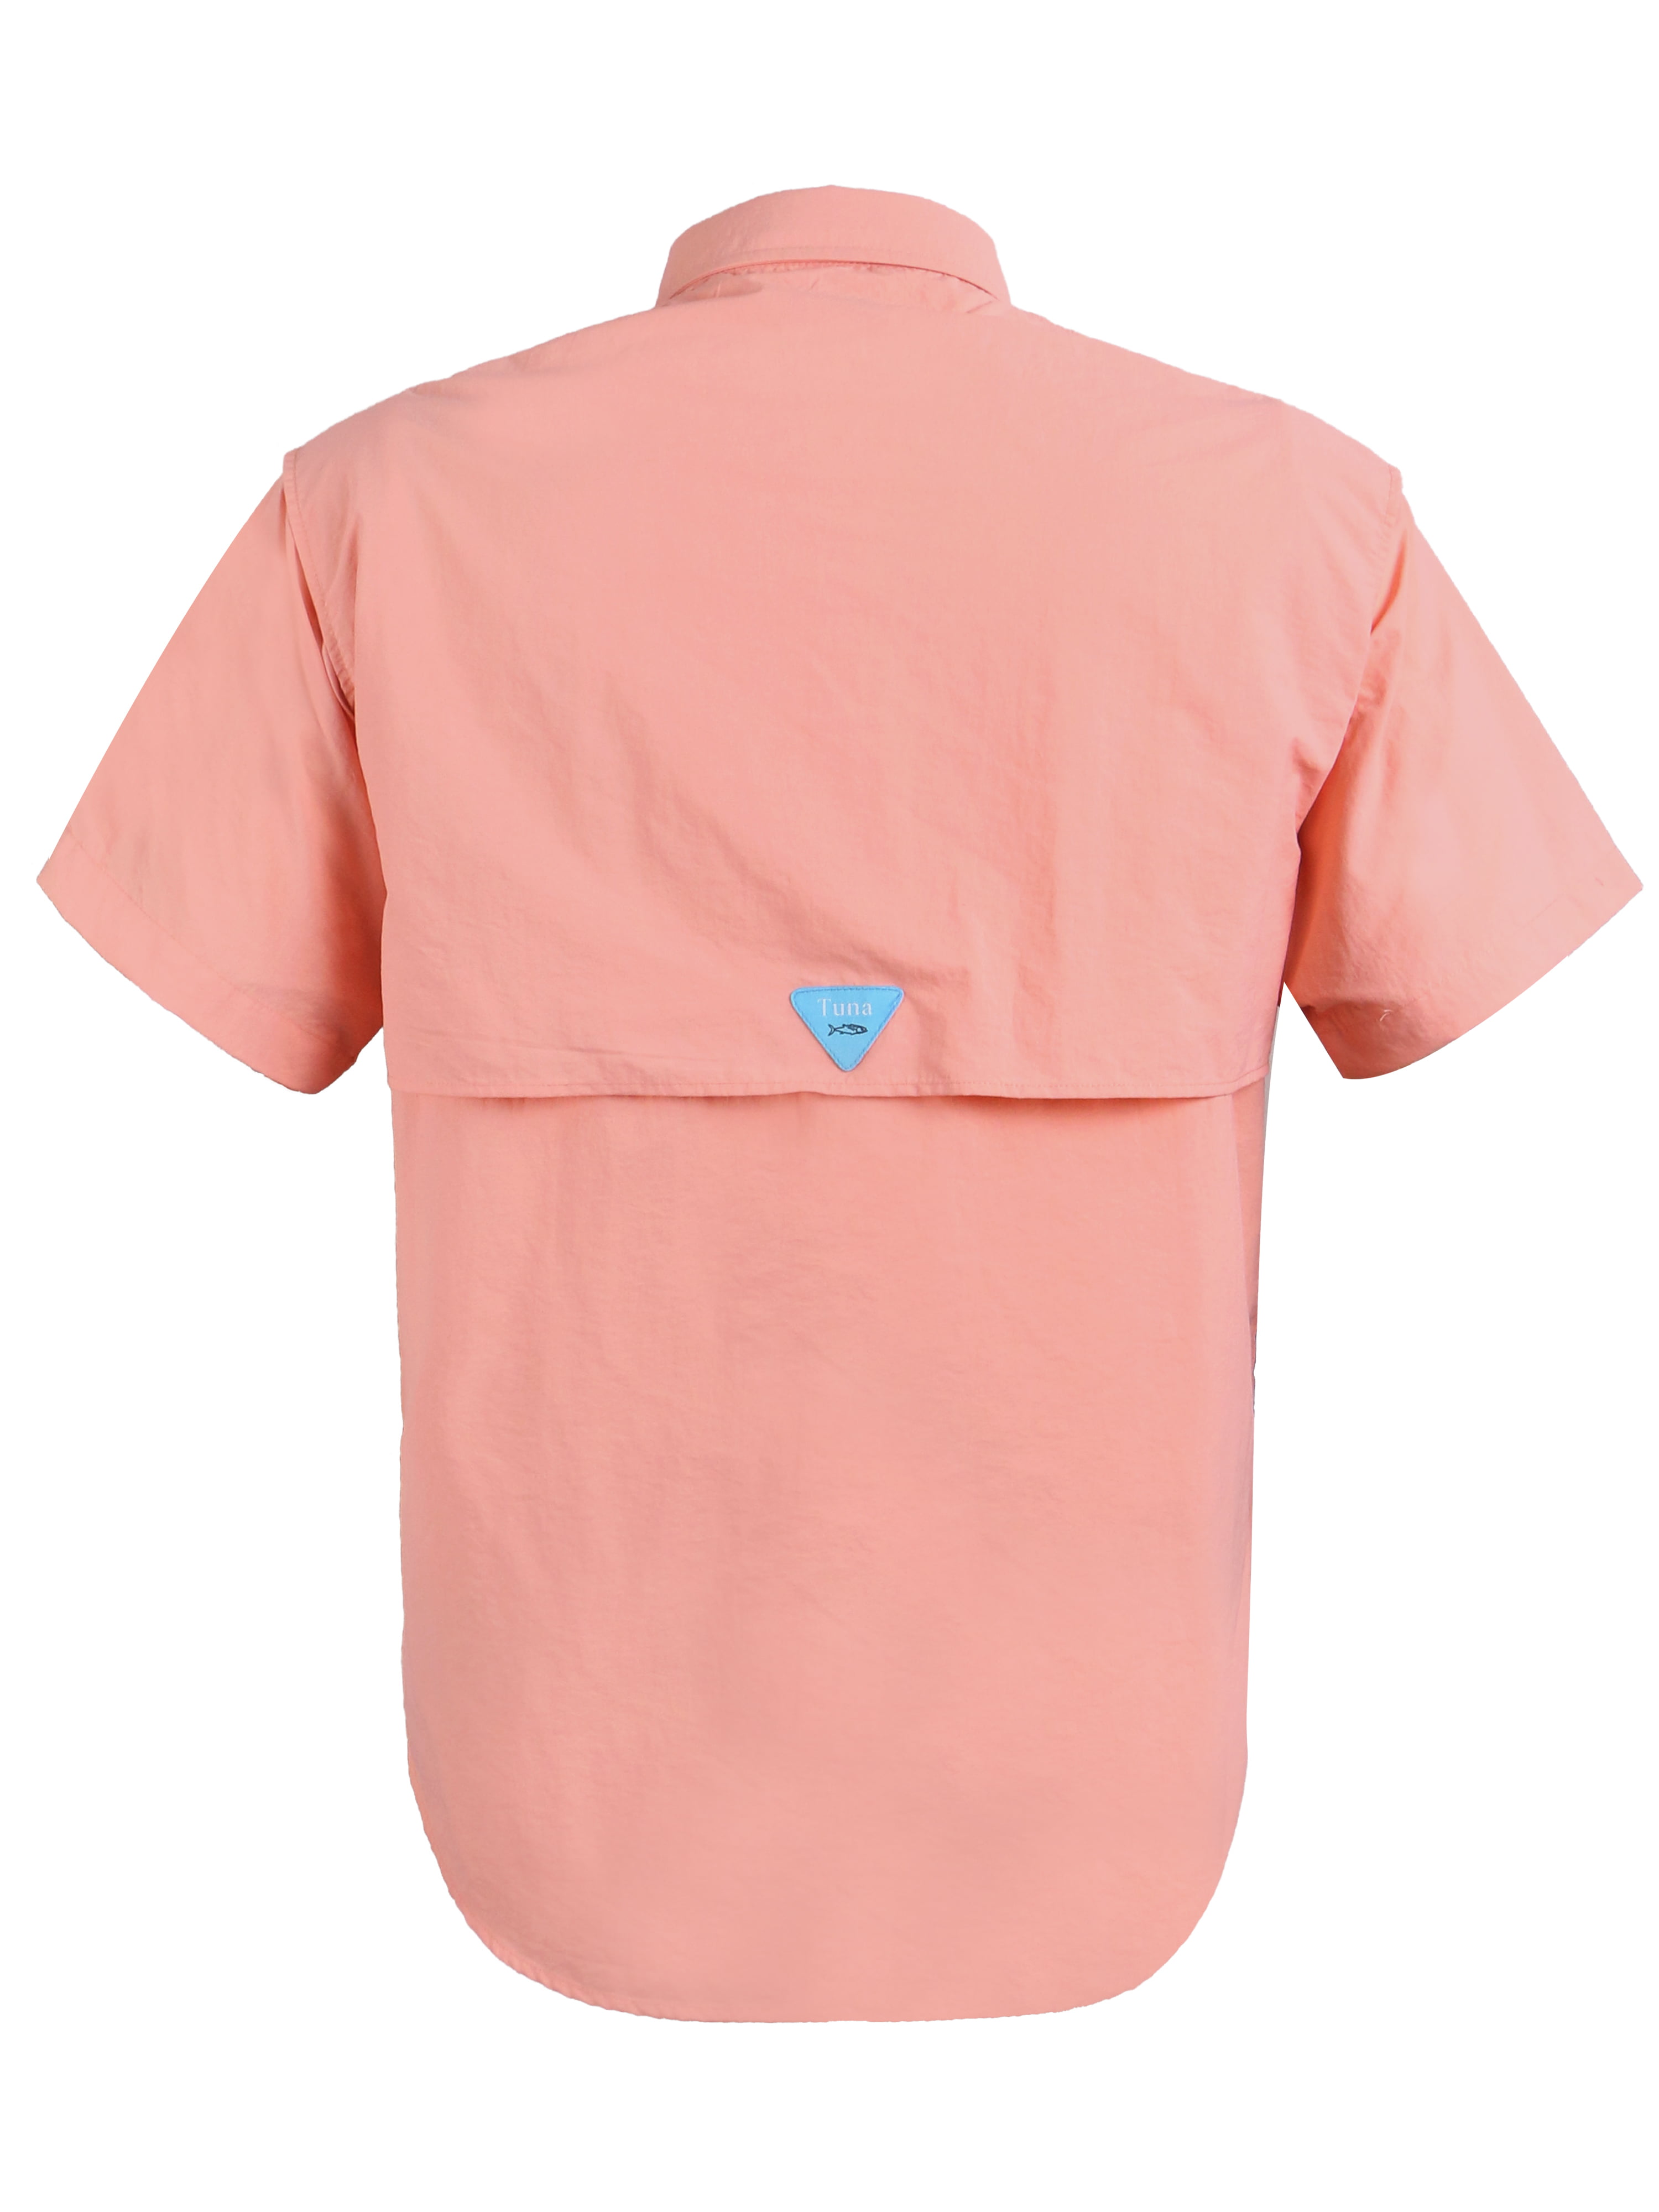 Buy Mojo Flats Camo UPF 50 Performance Fishing Shirt (Pink, Medium) Online  at desertcartOMAN